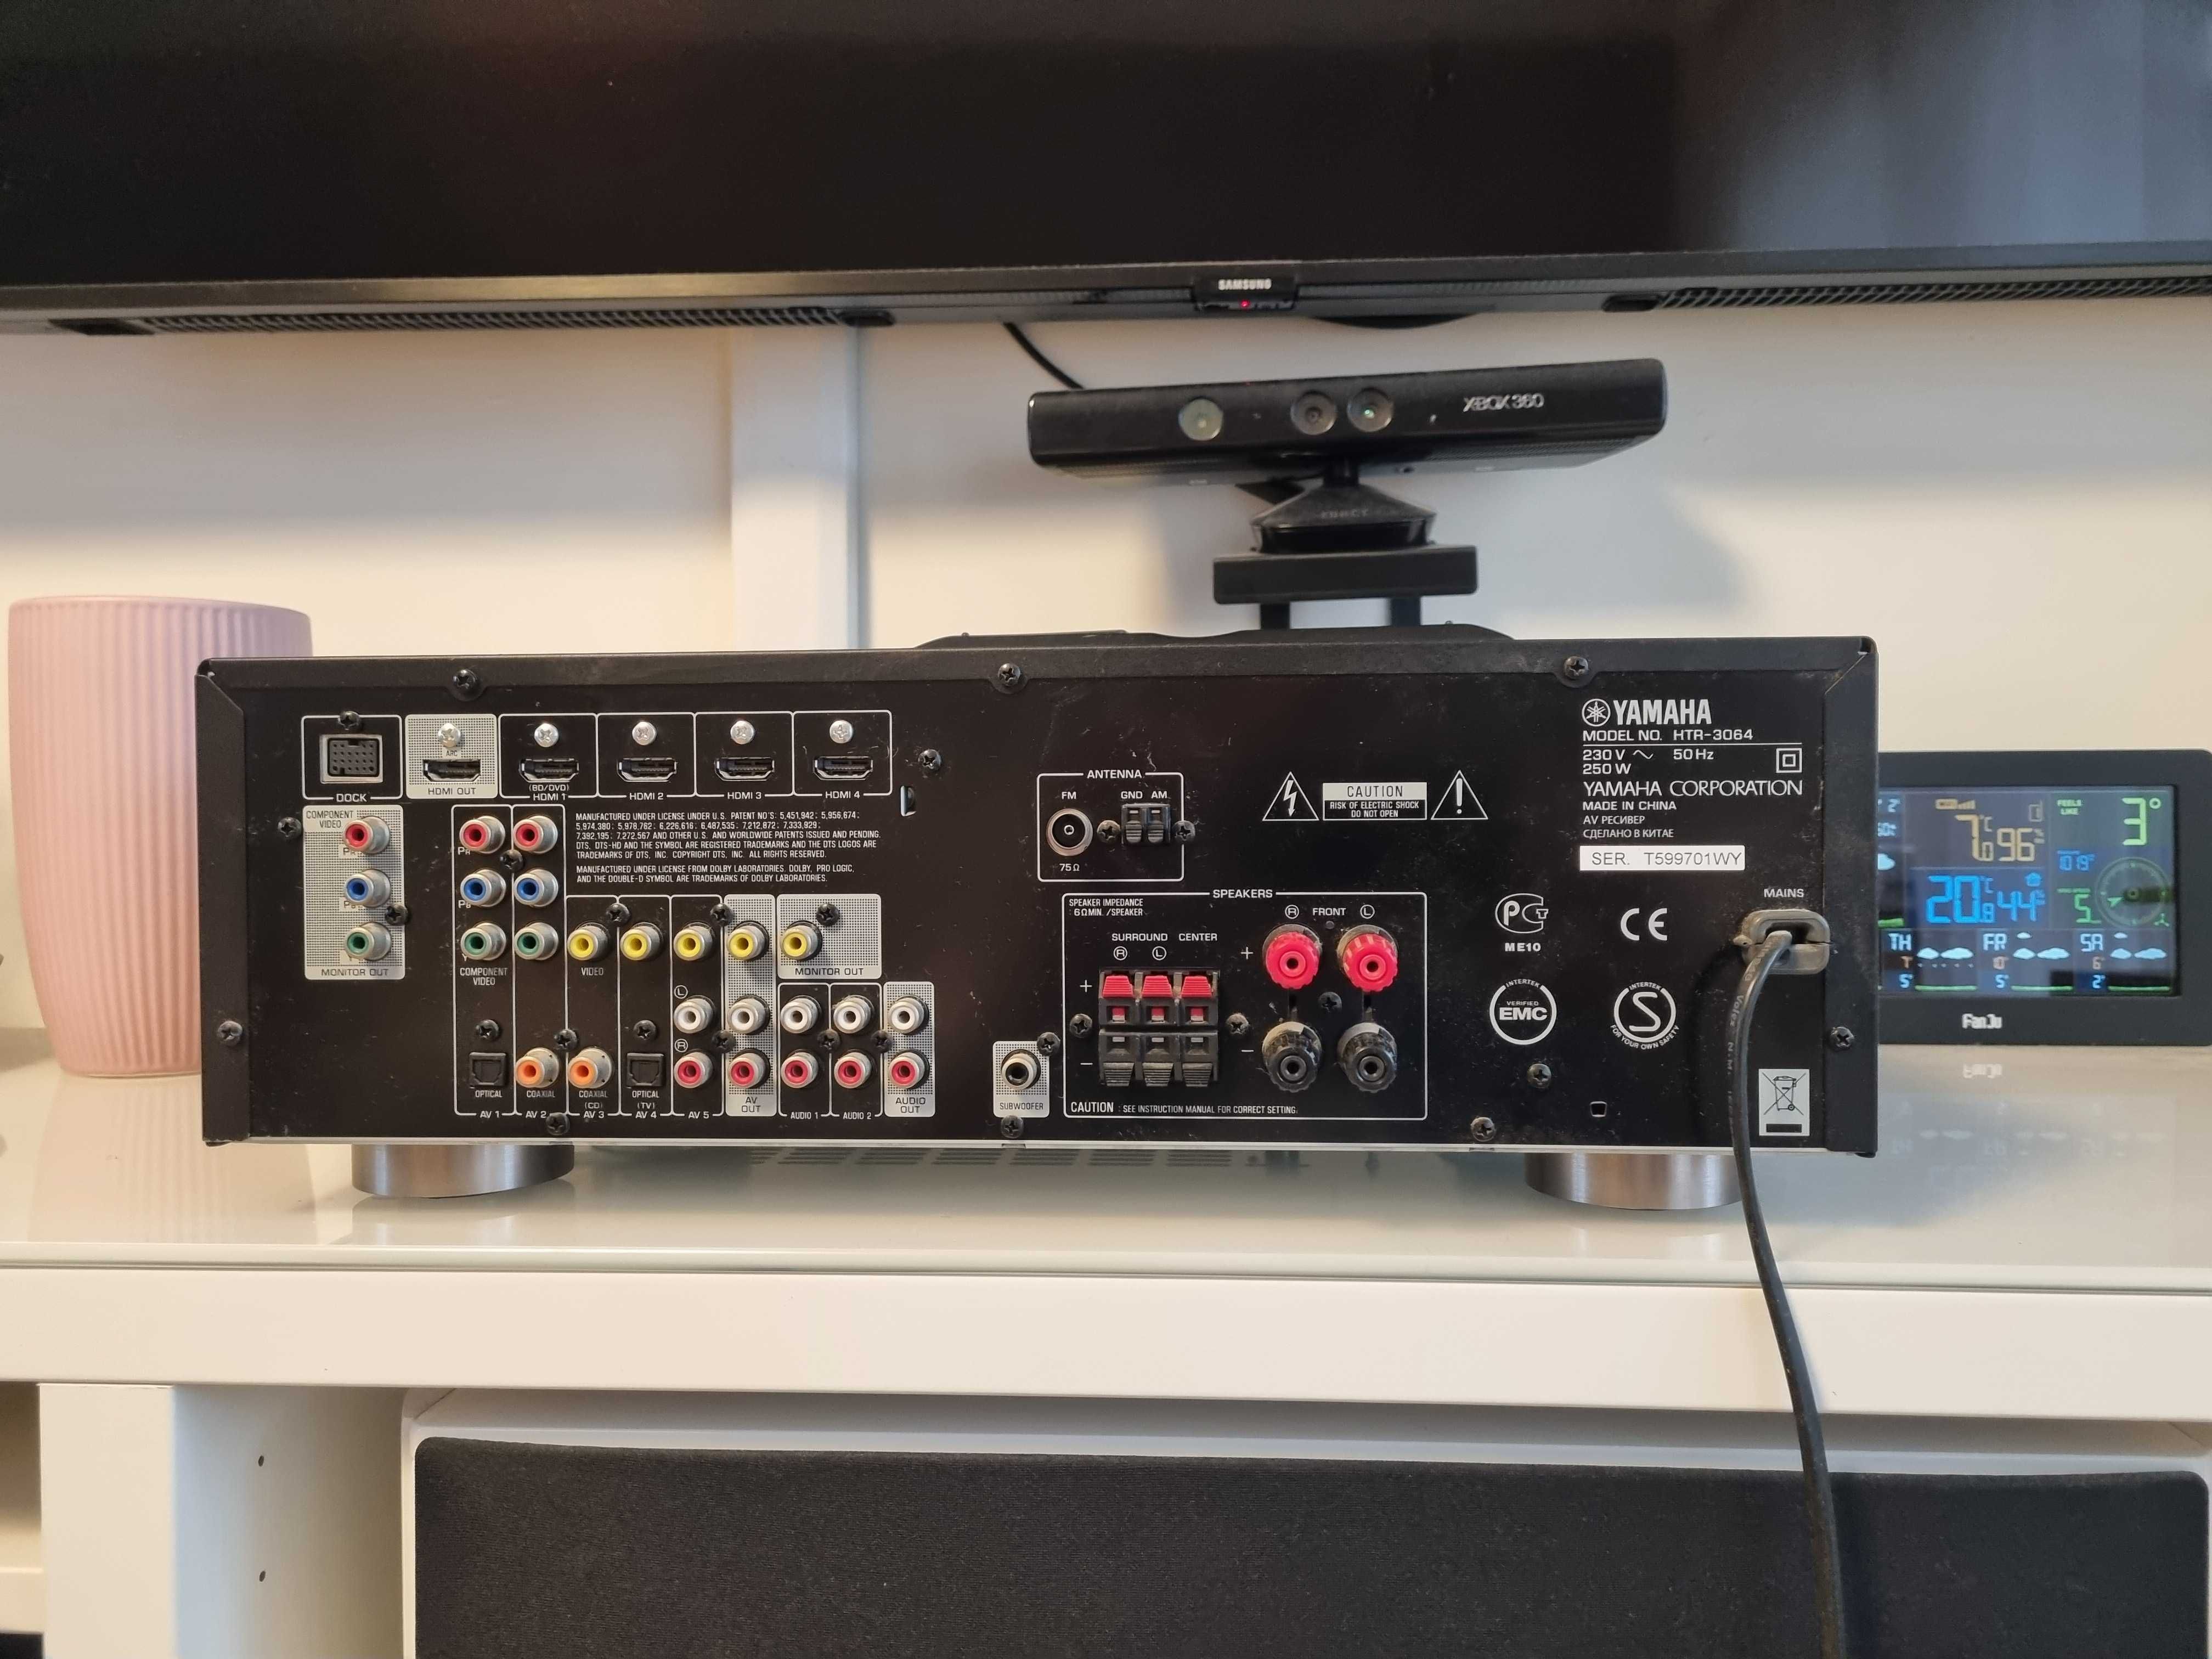 OKAZJA Amplituner wzmacniacz kino domowe stereo hdmi Yamaha htr 3064